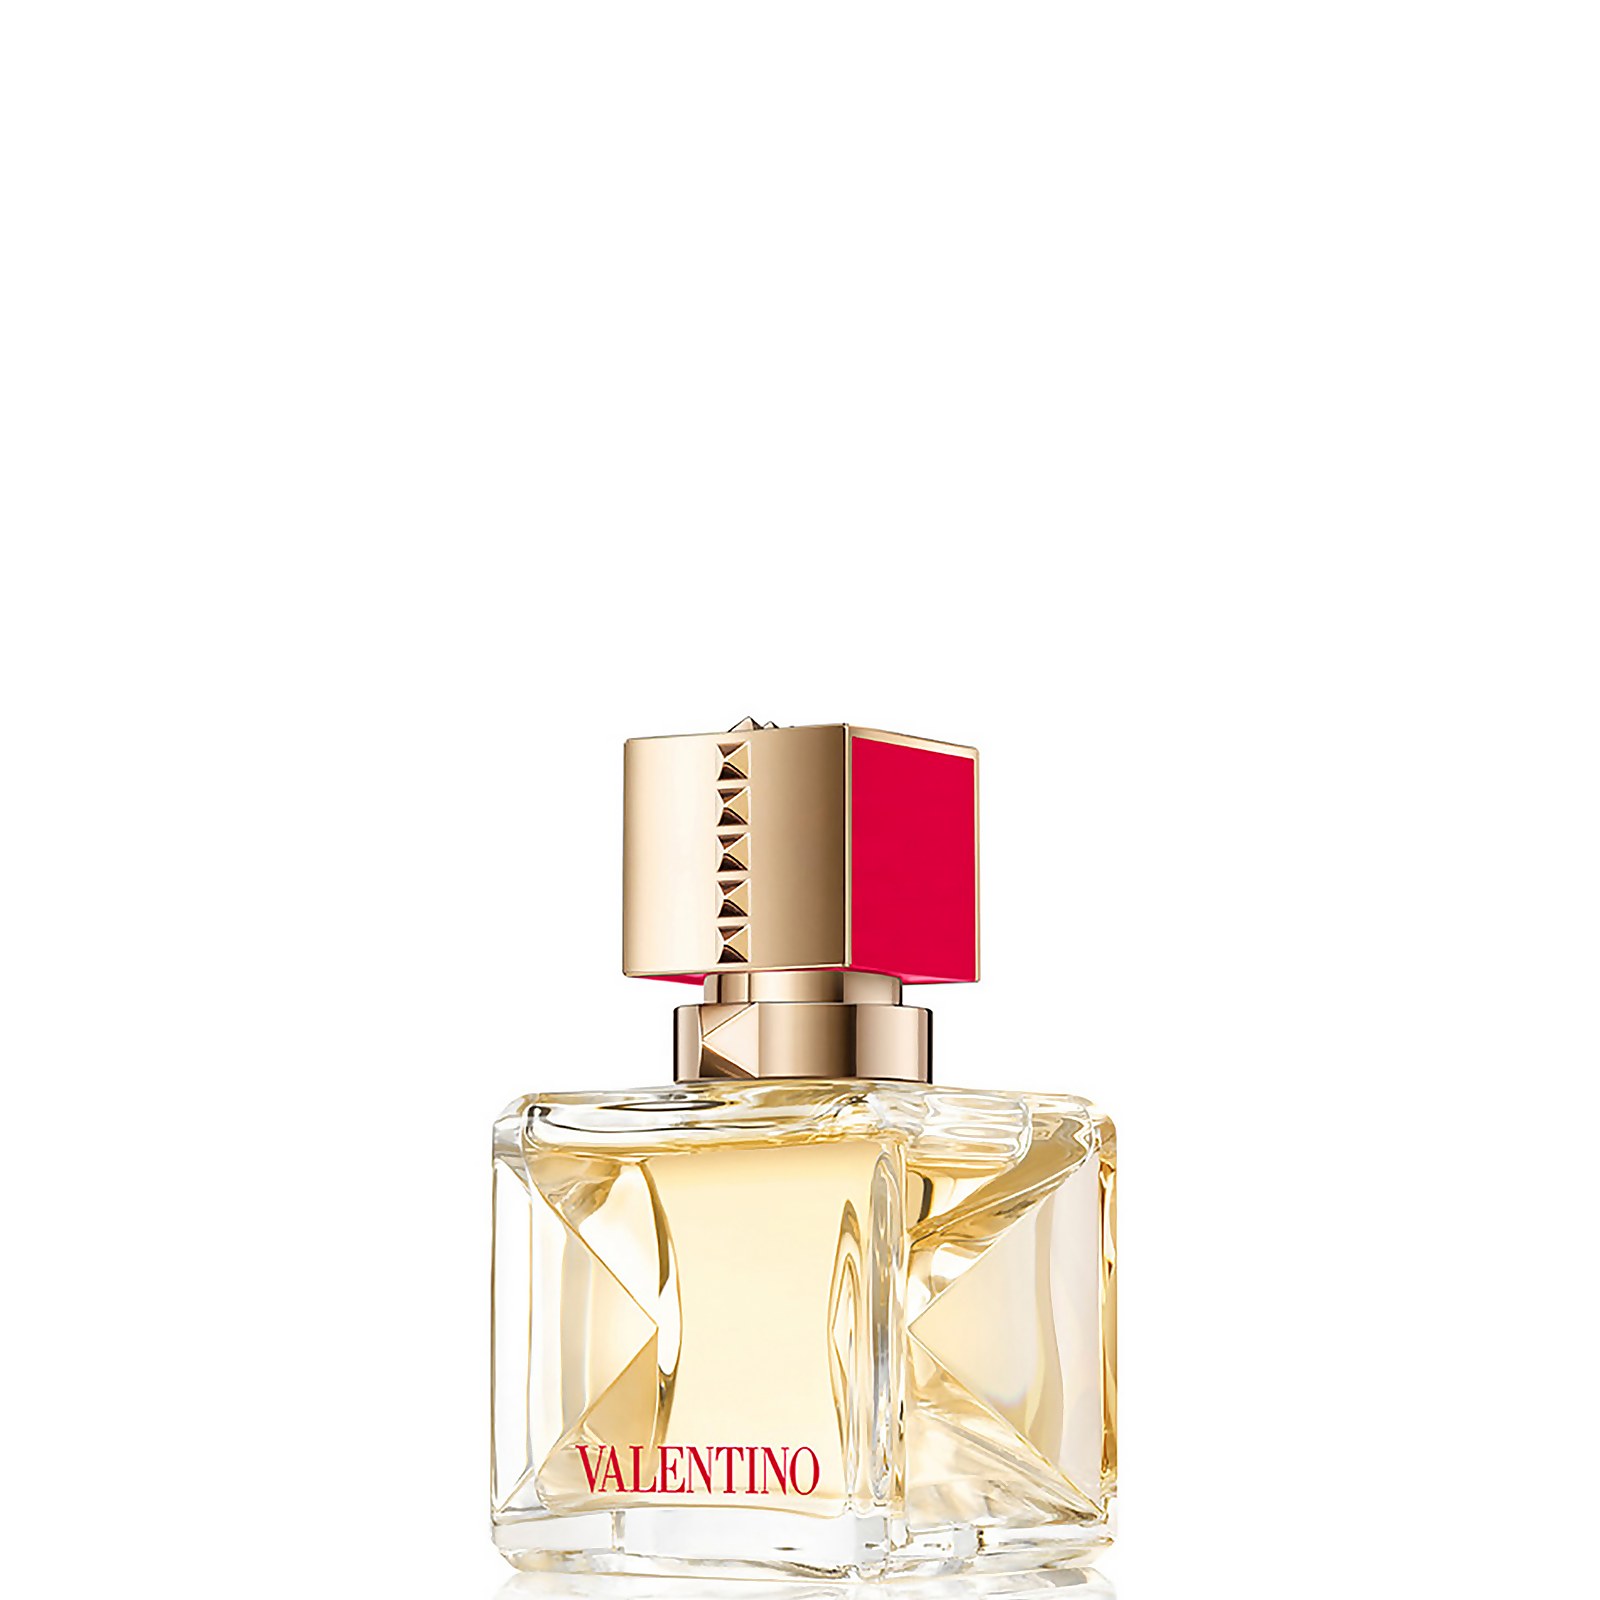 Valentino Voce Viva Eau de Parfum for Women - 30ml product